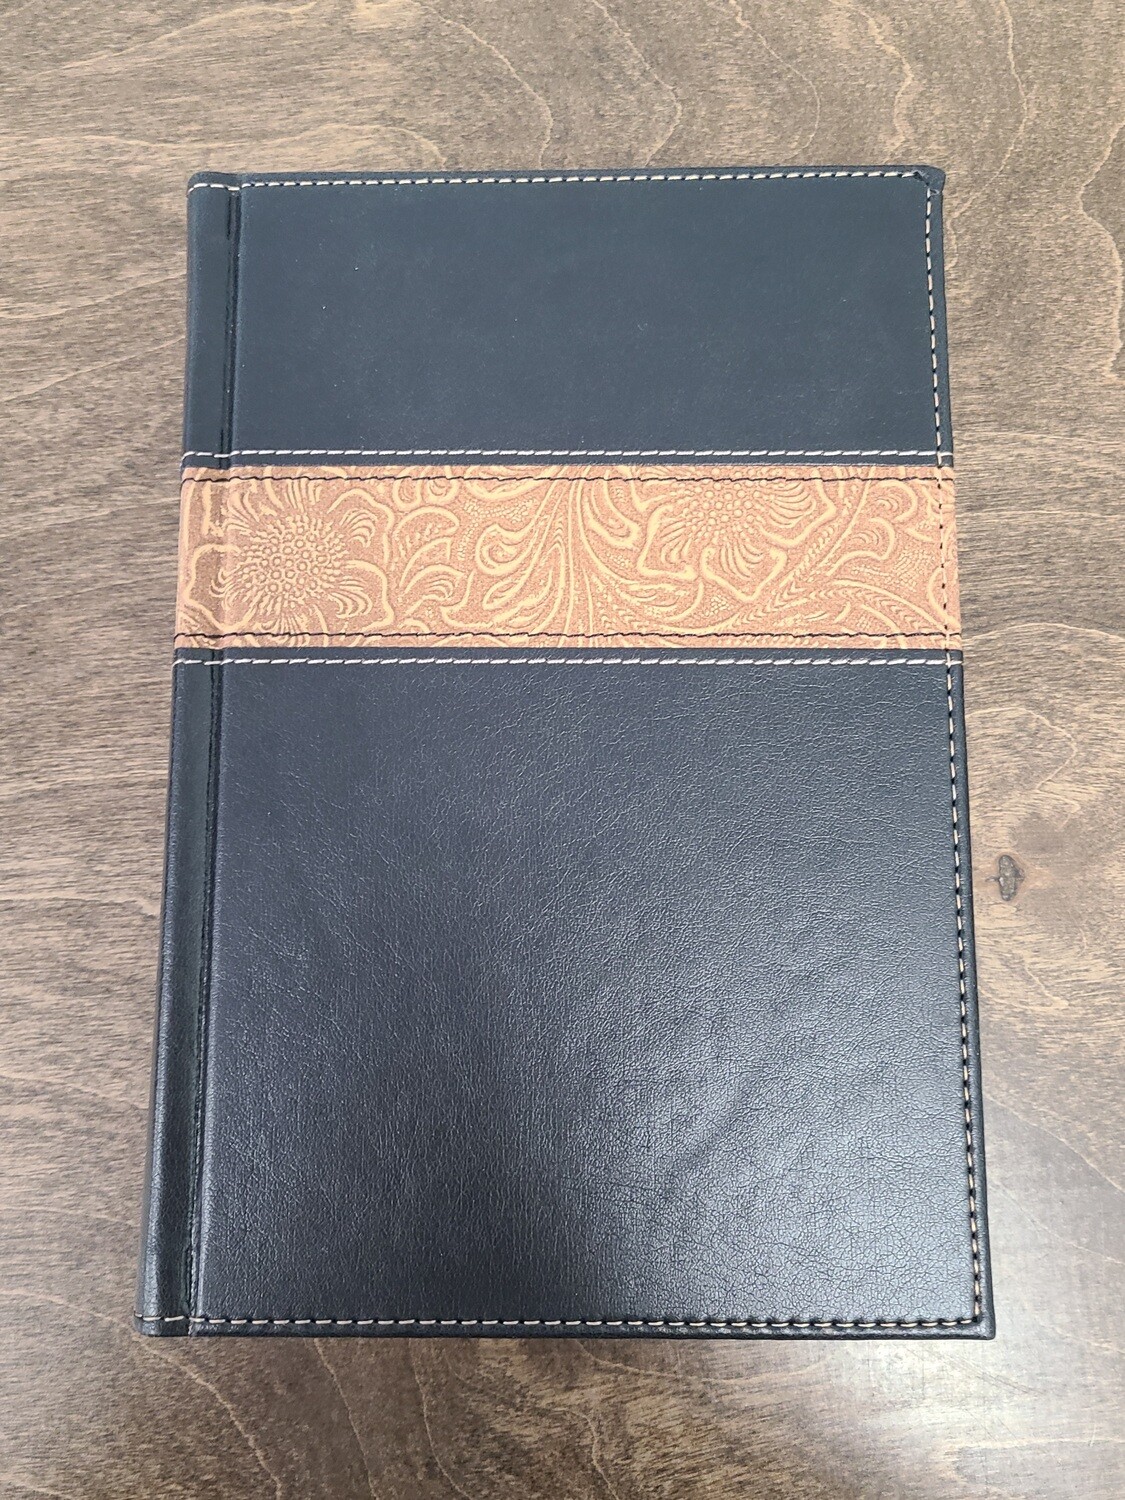 NKJV Reader's Bible - Black and Brown Hardcover